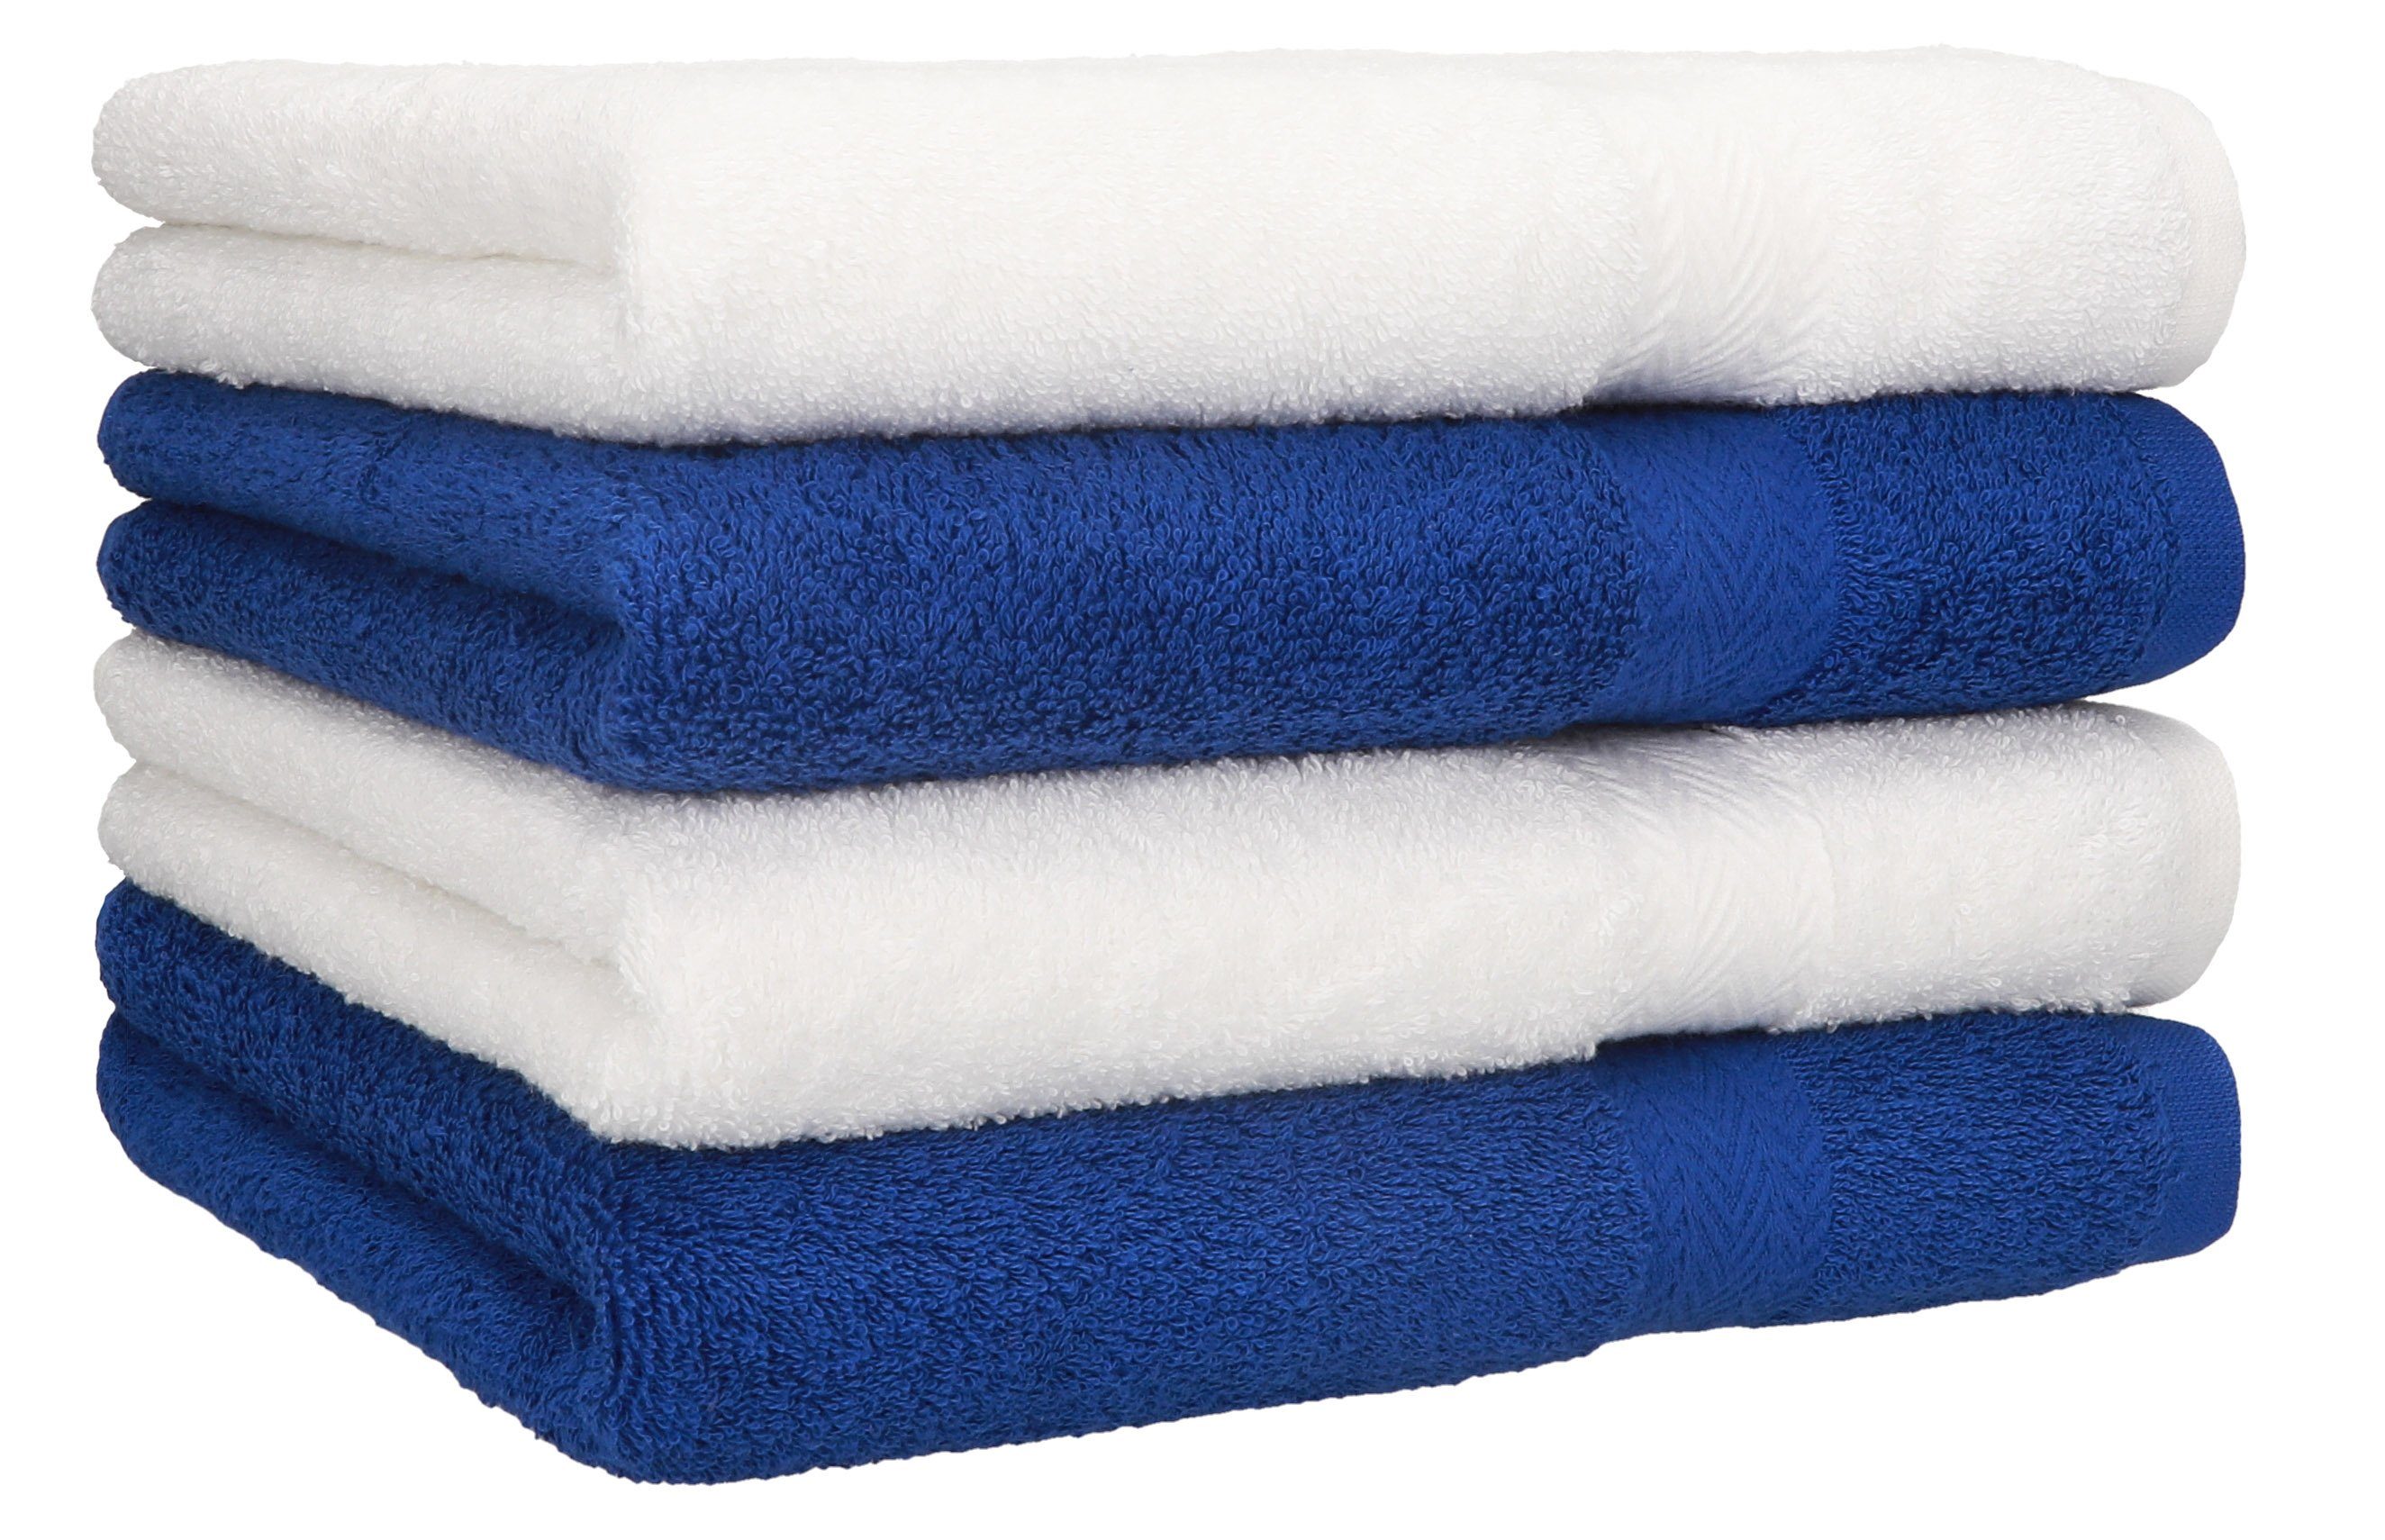 Betz Handtücher 4 Stück Handtücher Premium 4 Handtücher Farbe weiß und royalblau, 100% Baumwolle